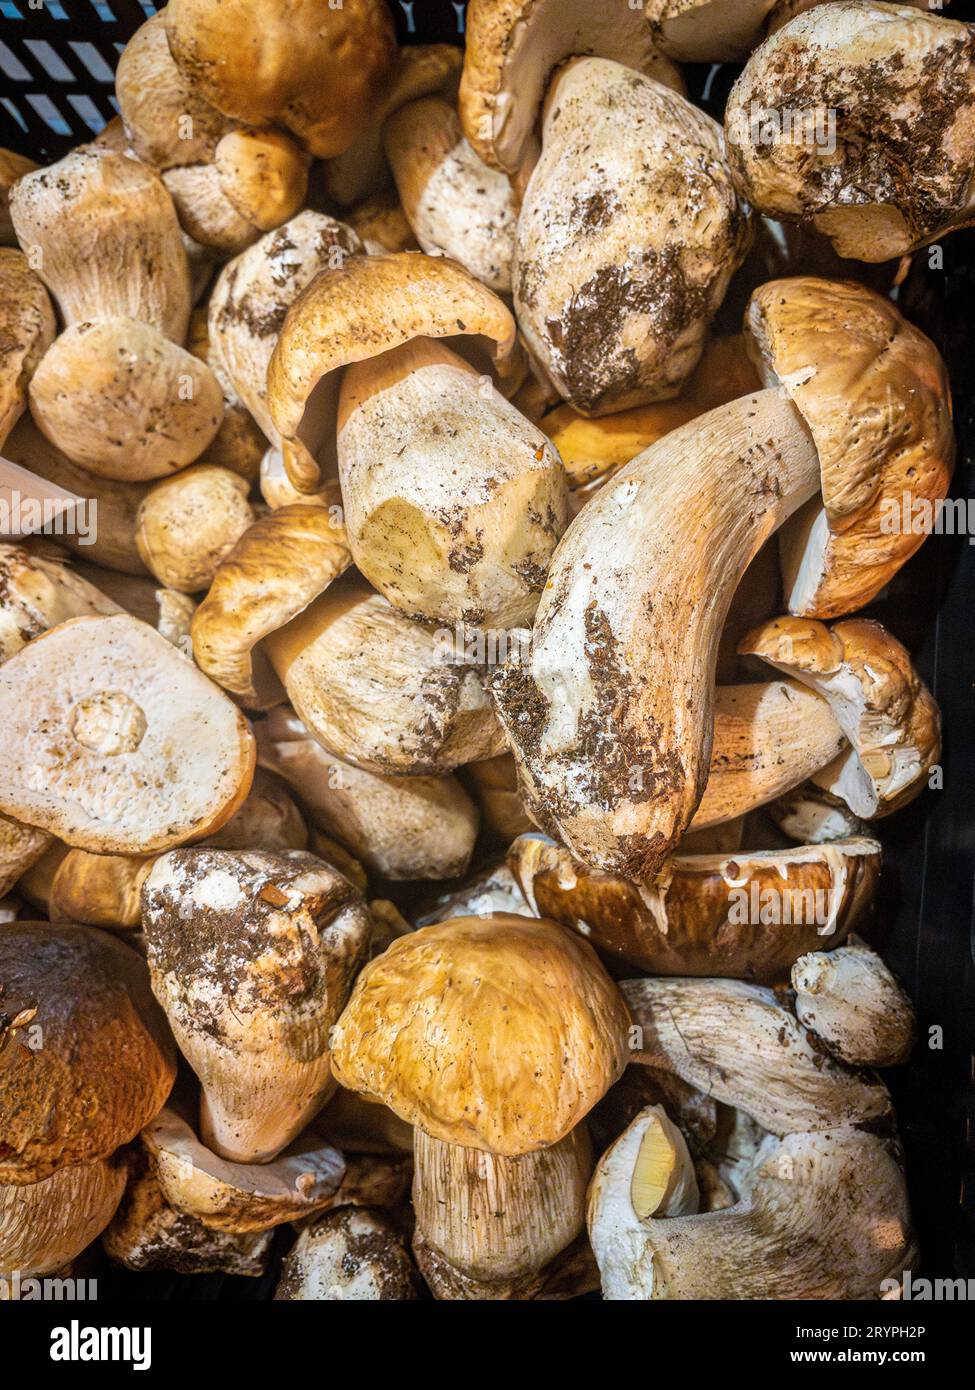 Boletus-Pilze (Boletus edulis) in einer Kiste eines Marktes. Stockfoto